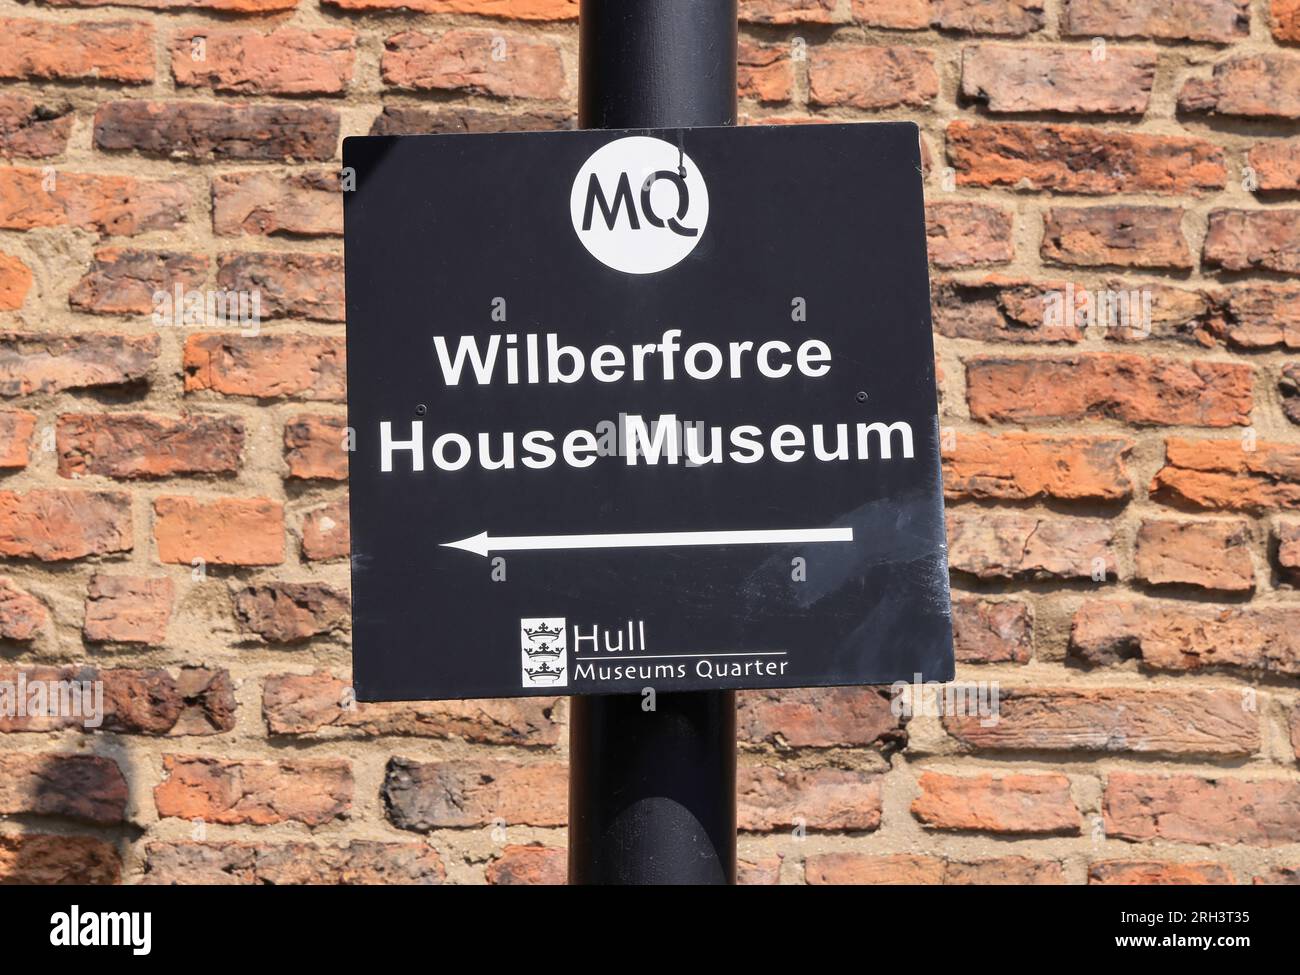 Wilberforce House, Geburtsort von William, dem berühmten Kämpfer gegen den Sklavenhandel. Das Haus ist eines der 3 Museen im Hull's Museum Quarter, Großbritannien Stockfoto